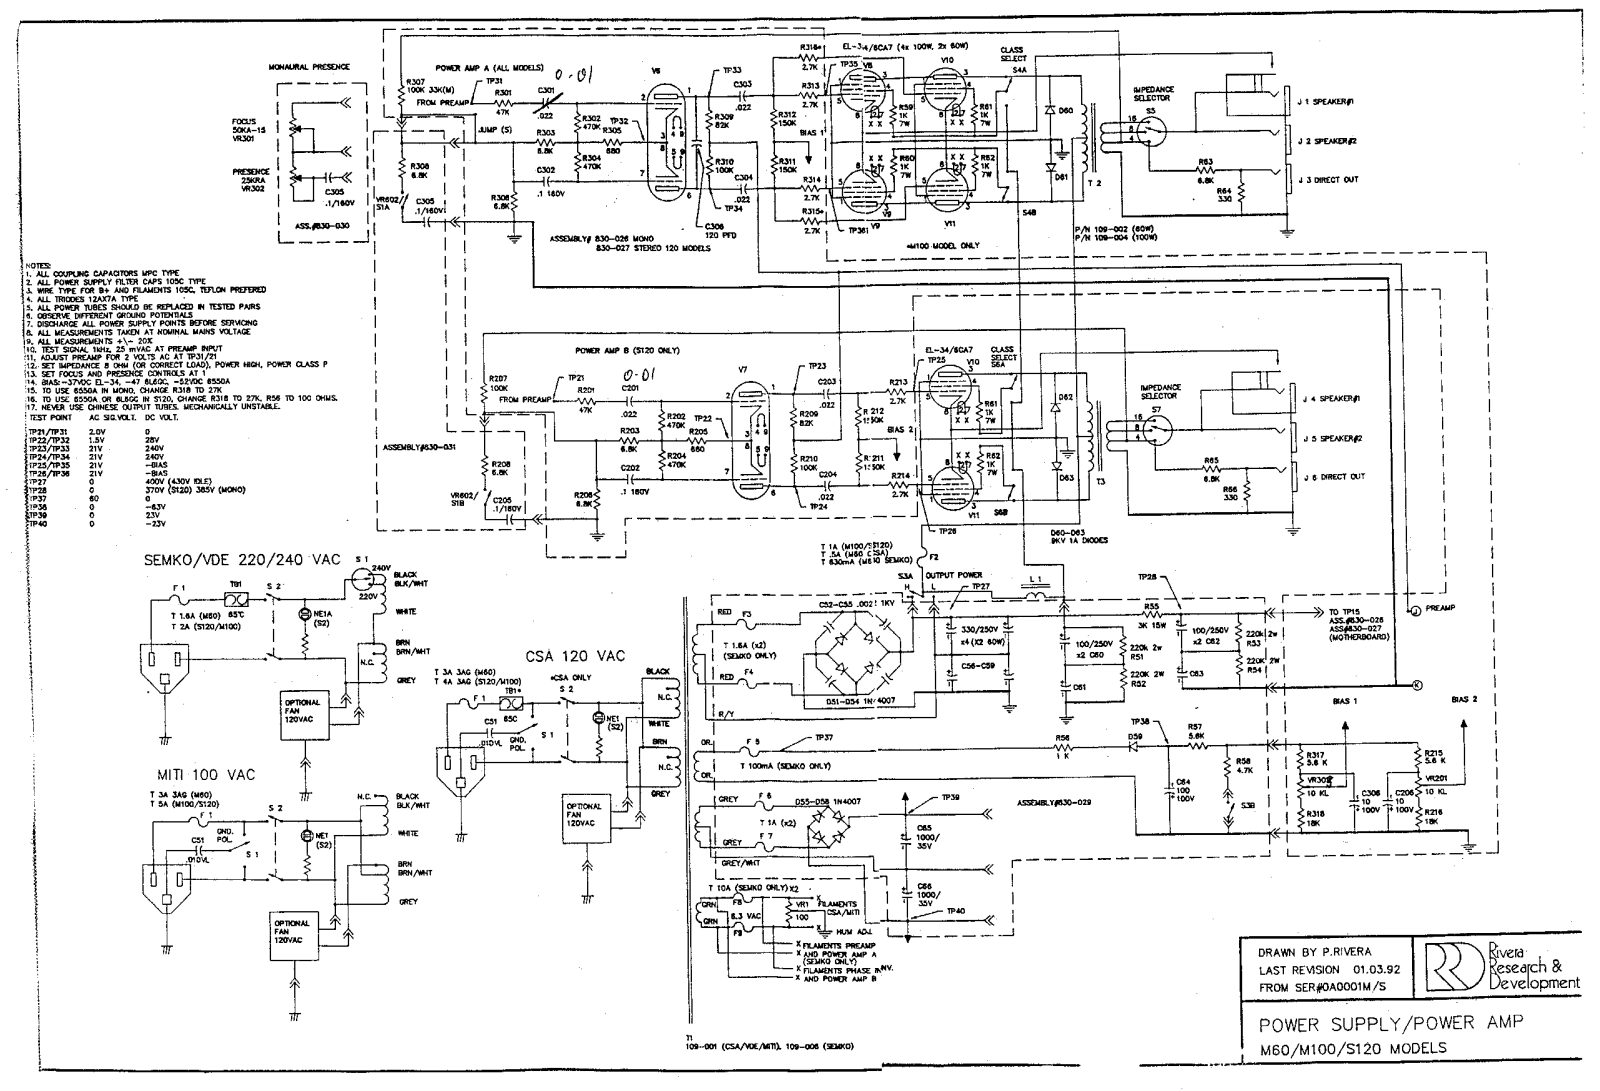 Rivera s120, m60, m100 schematic